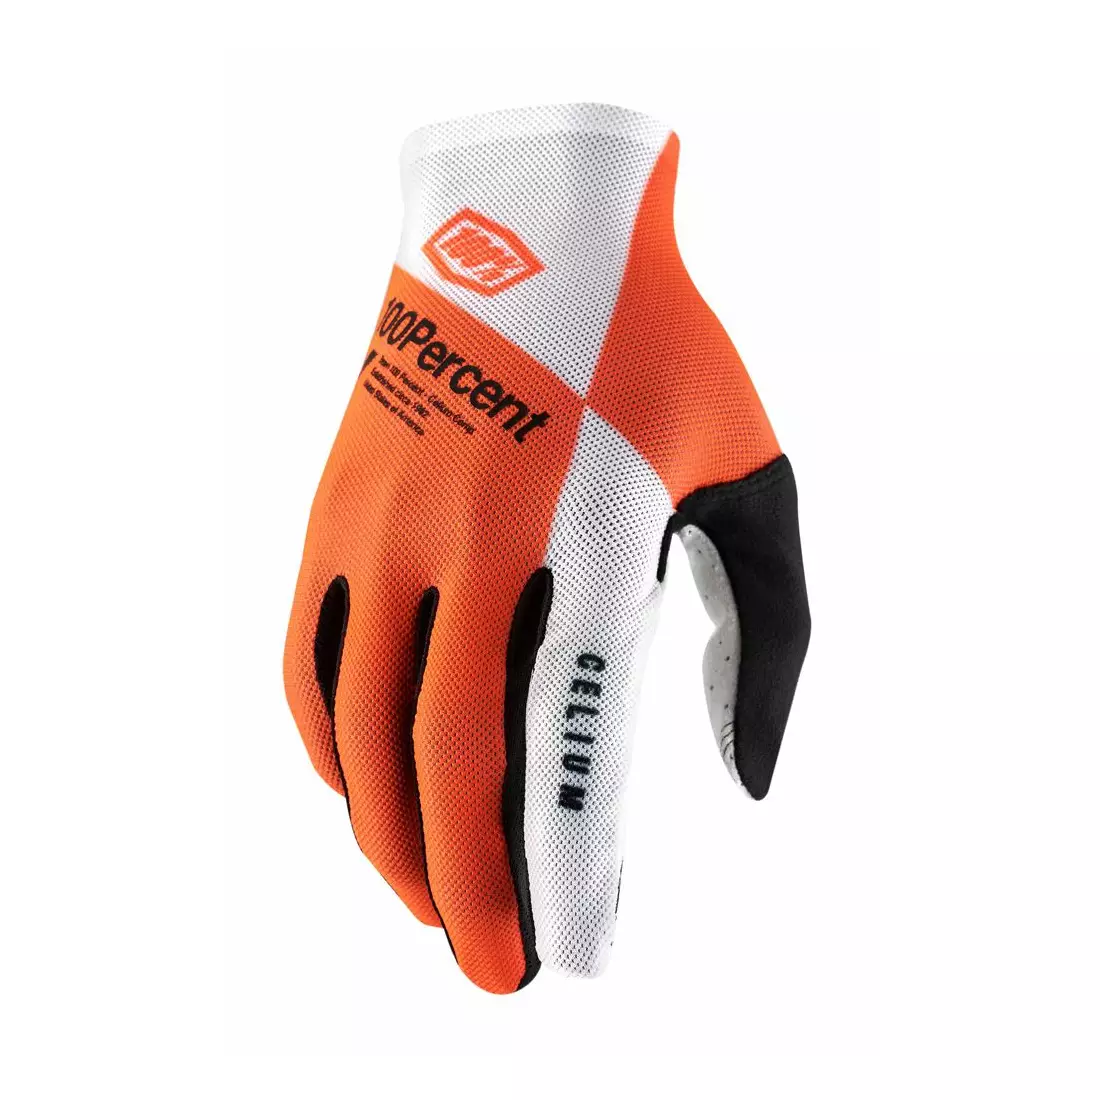 100% mănuși de ciclism pentru bărbați CELIUM fluo orange white STO-10005-444-12